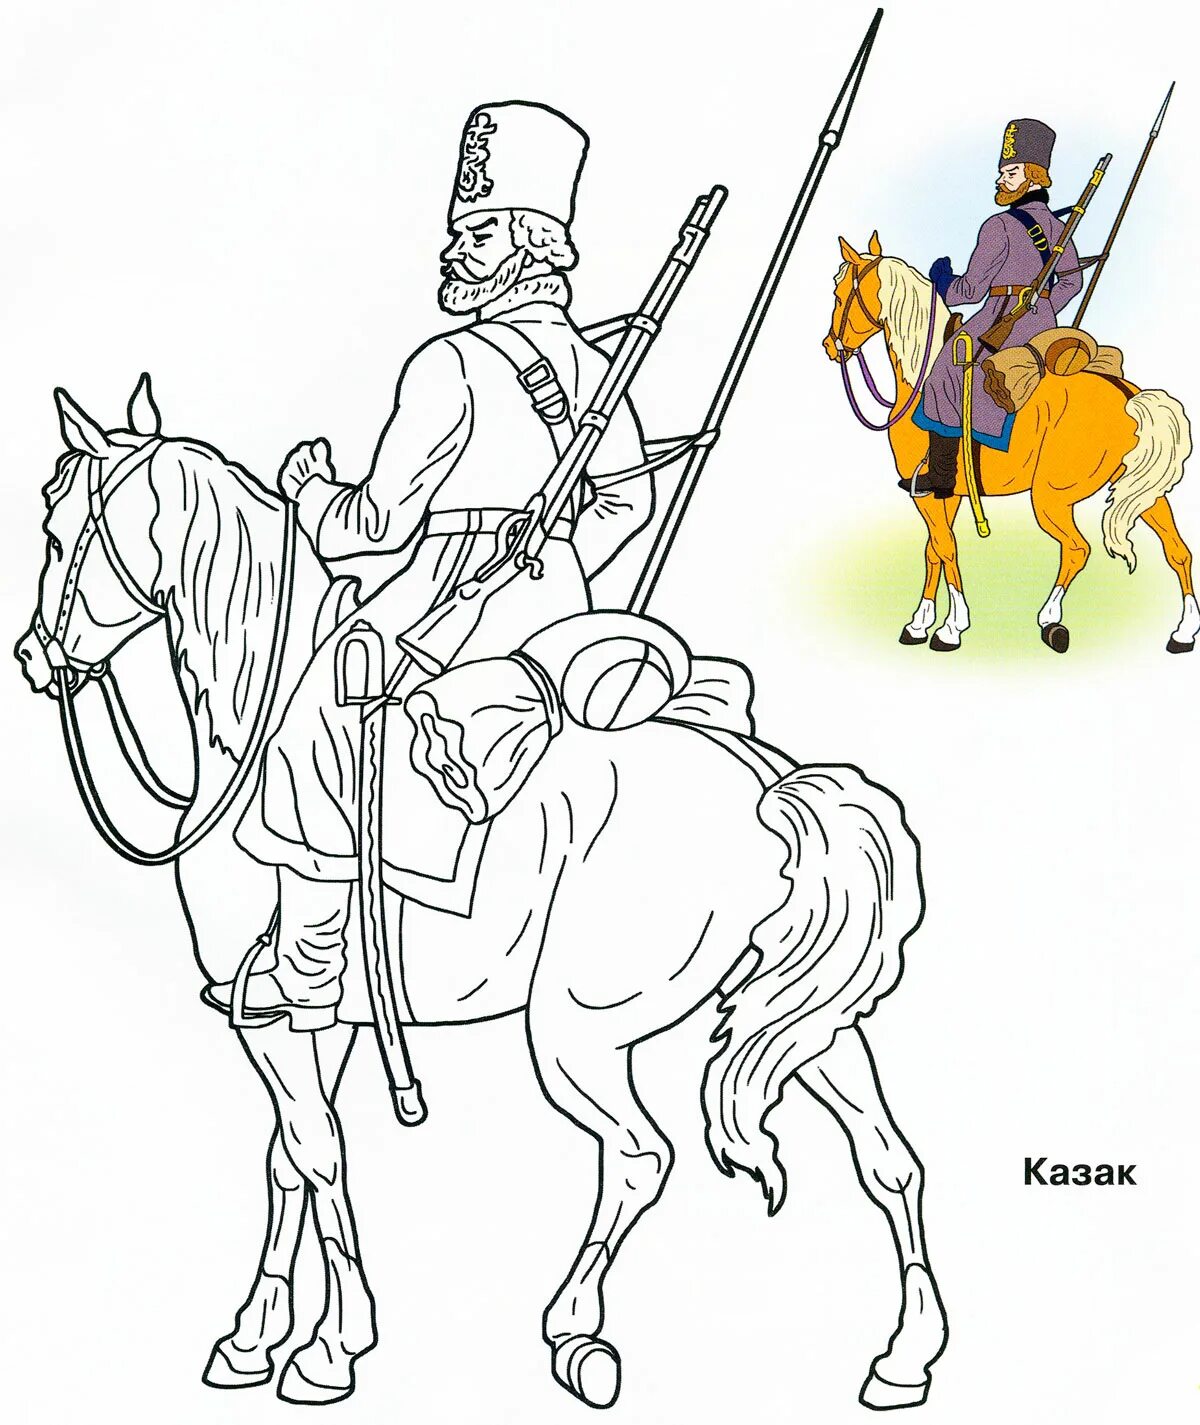 Delightful Cossacks coloring for schoolchildren